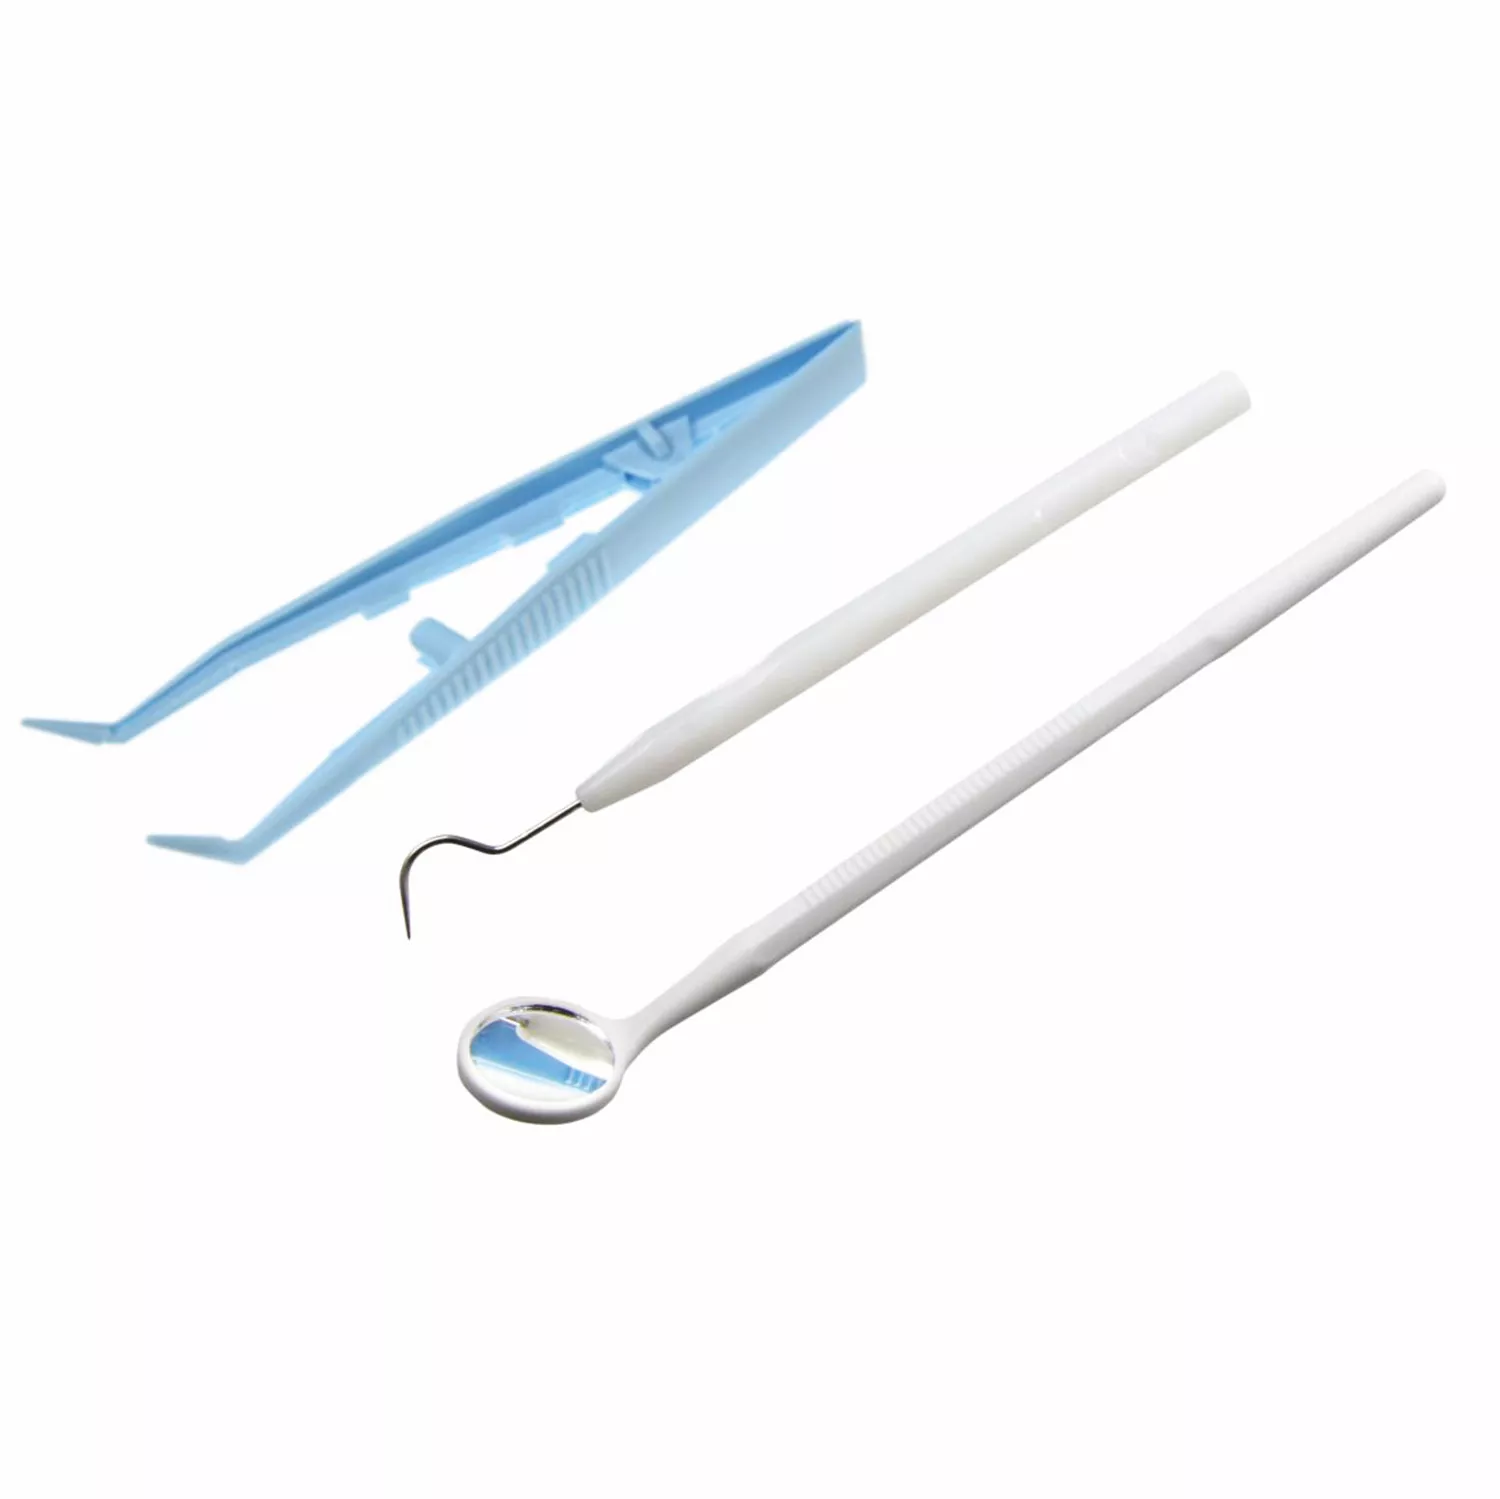 Набор стоматологический одноразовый стерильный ЕваДент тип 2 (зеркало стоматологическое, зонд стоматологический, пинцет)